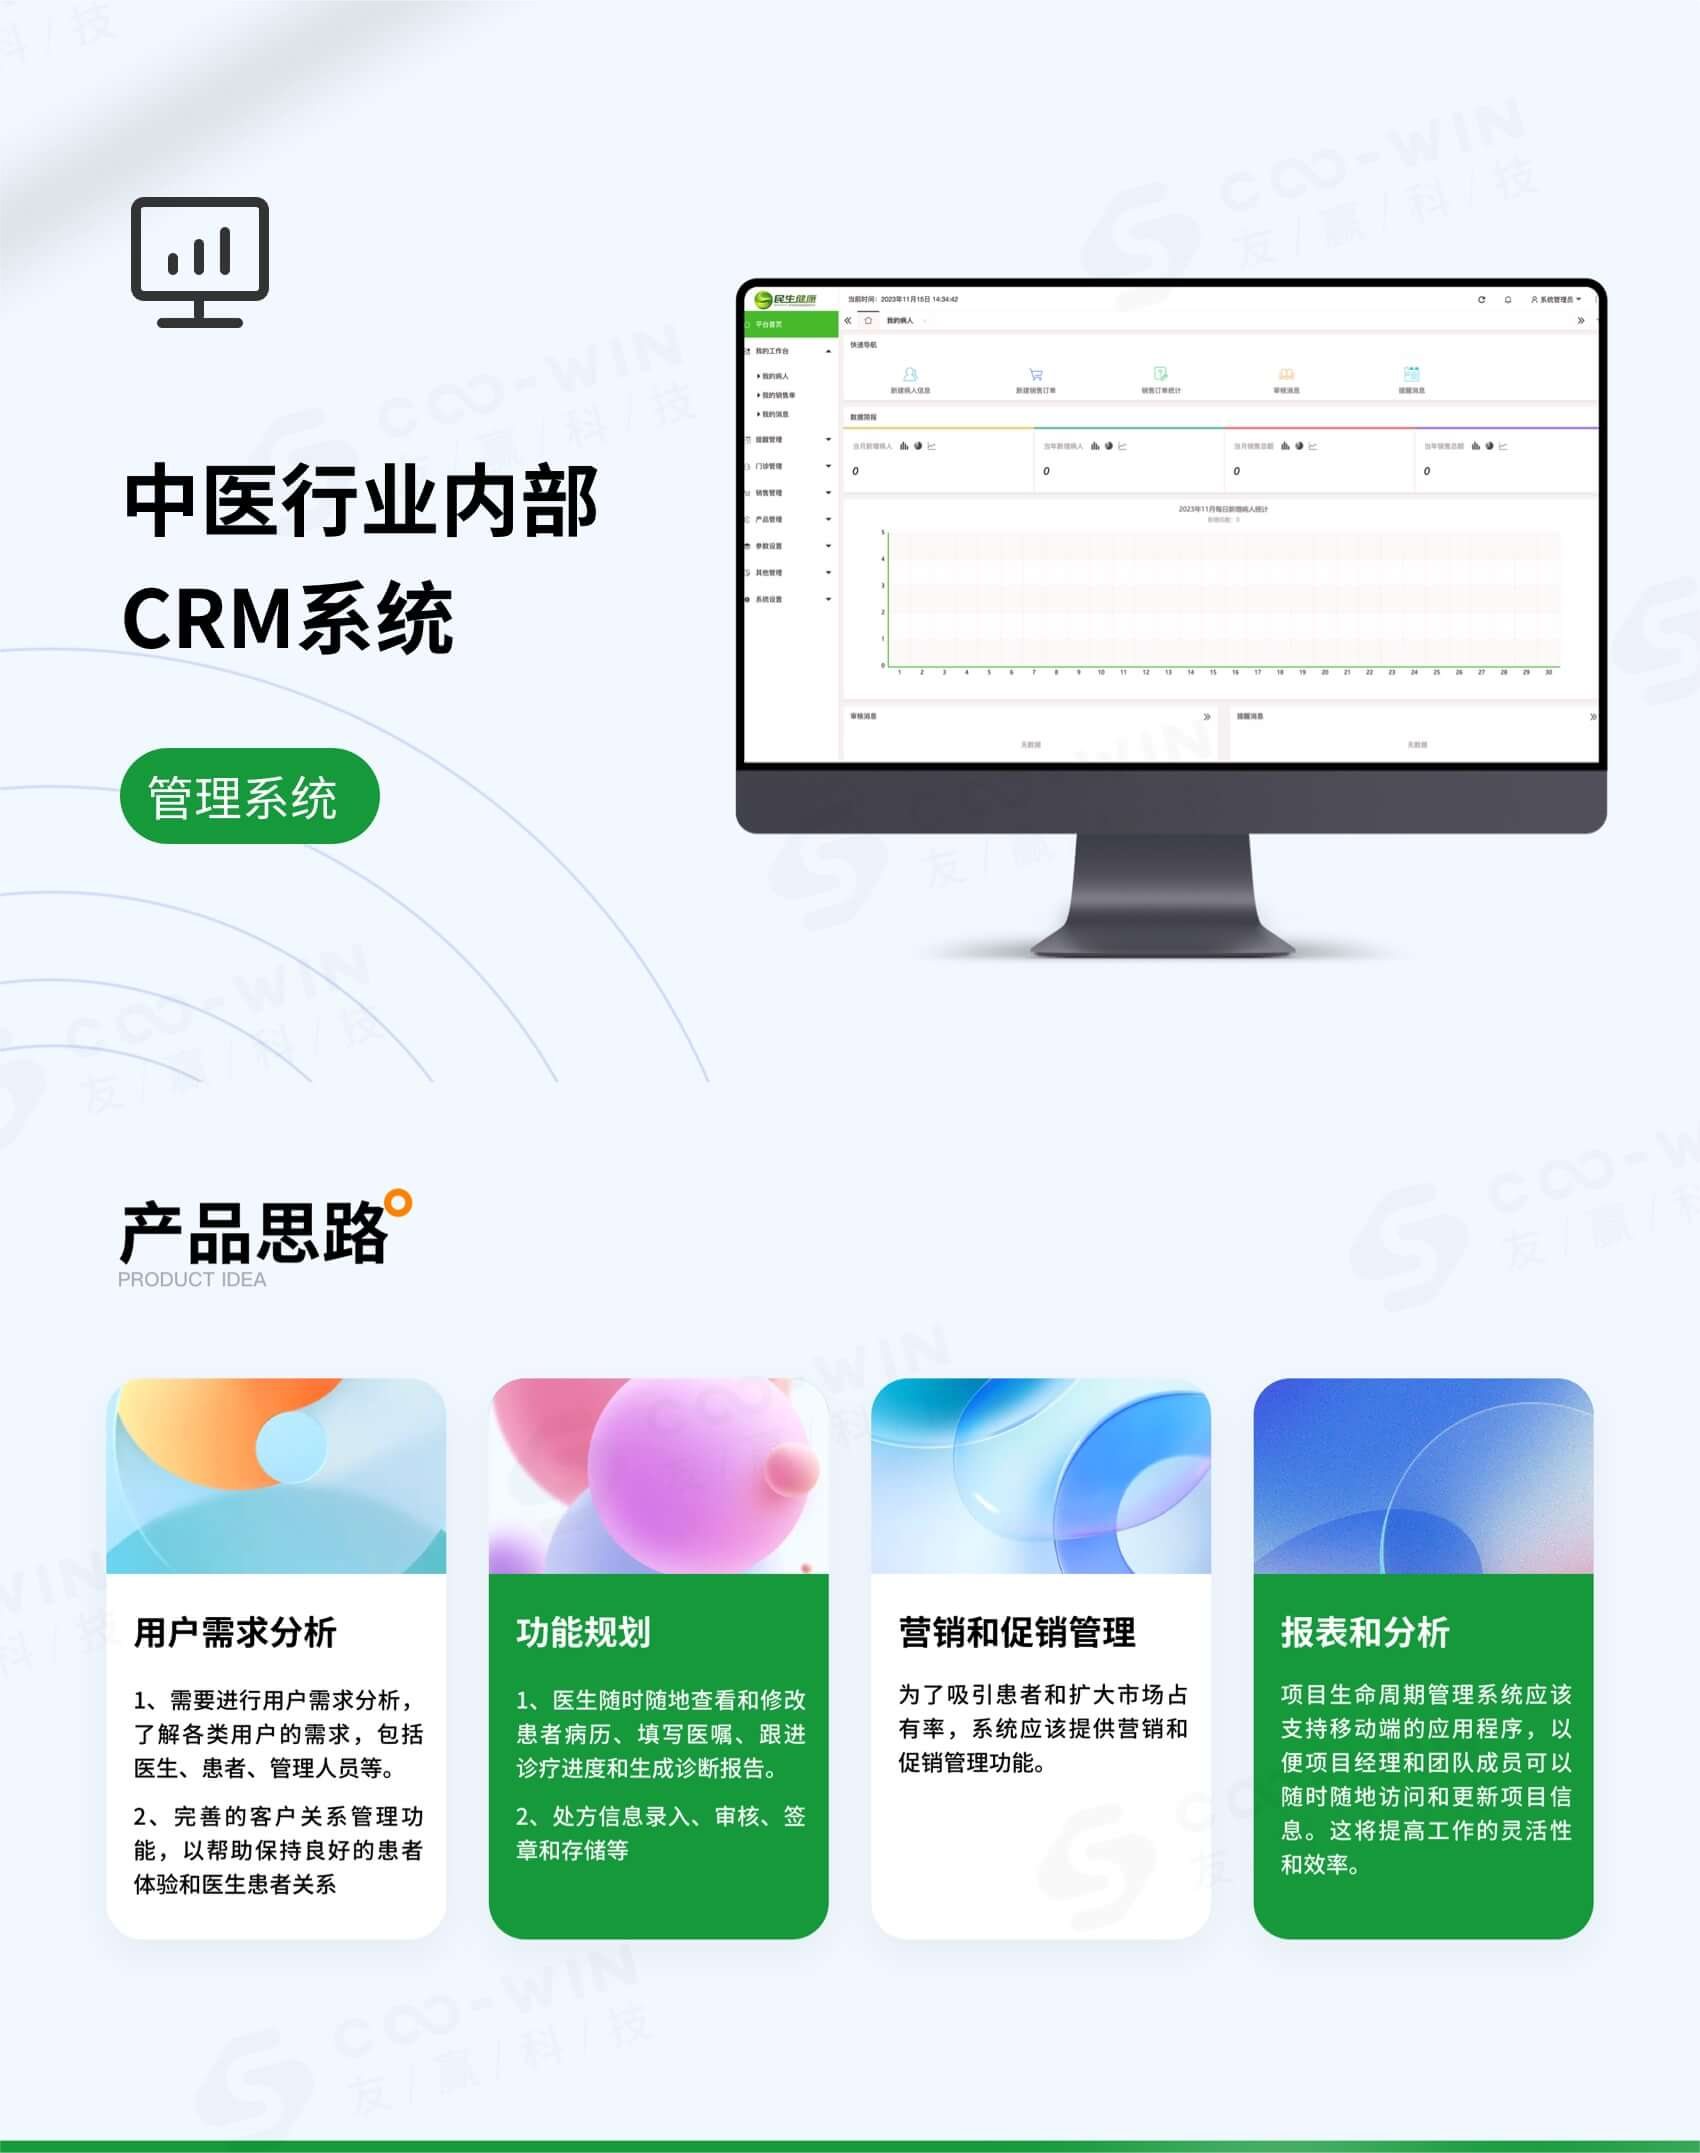 【行业软件】中医行业内部CRM系统